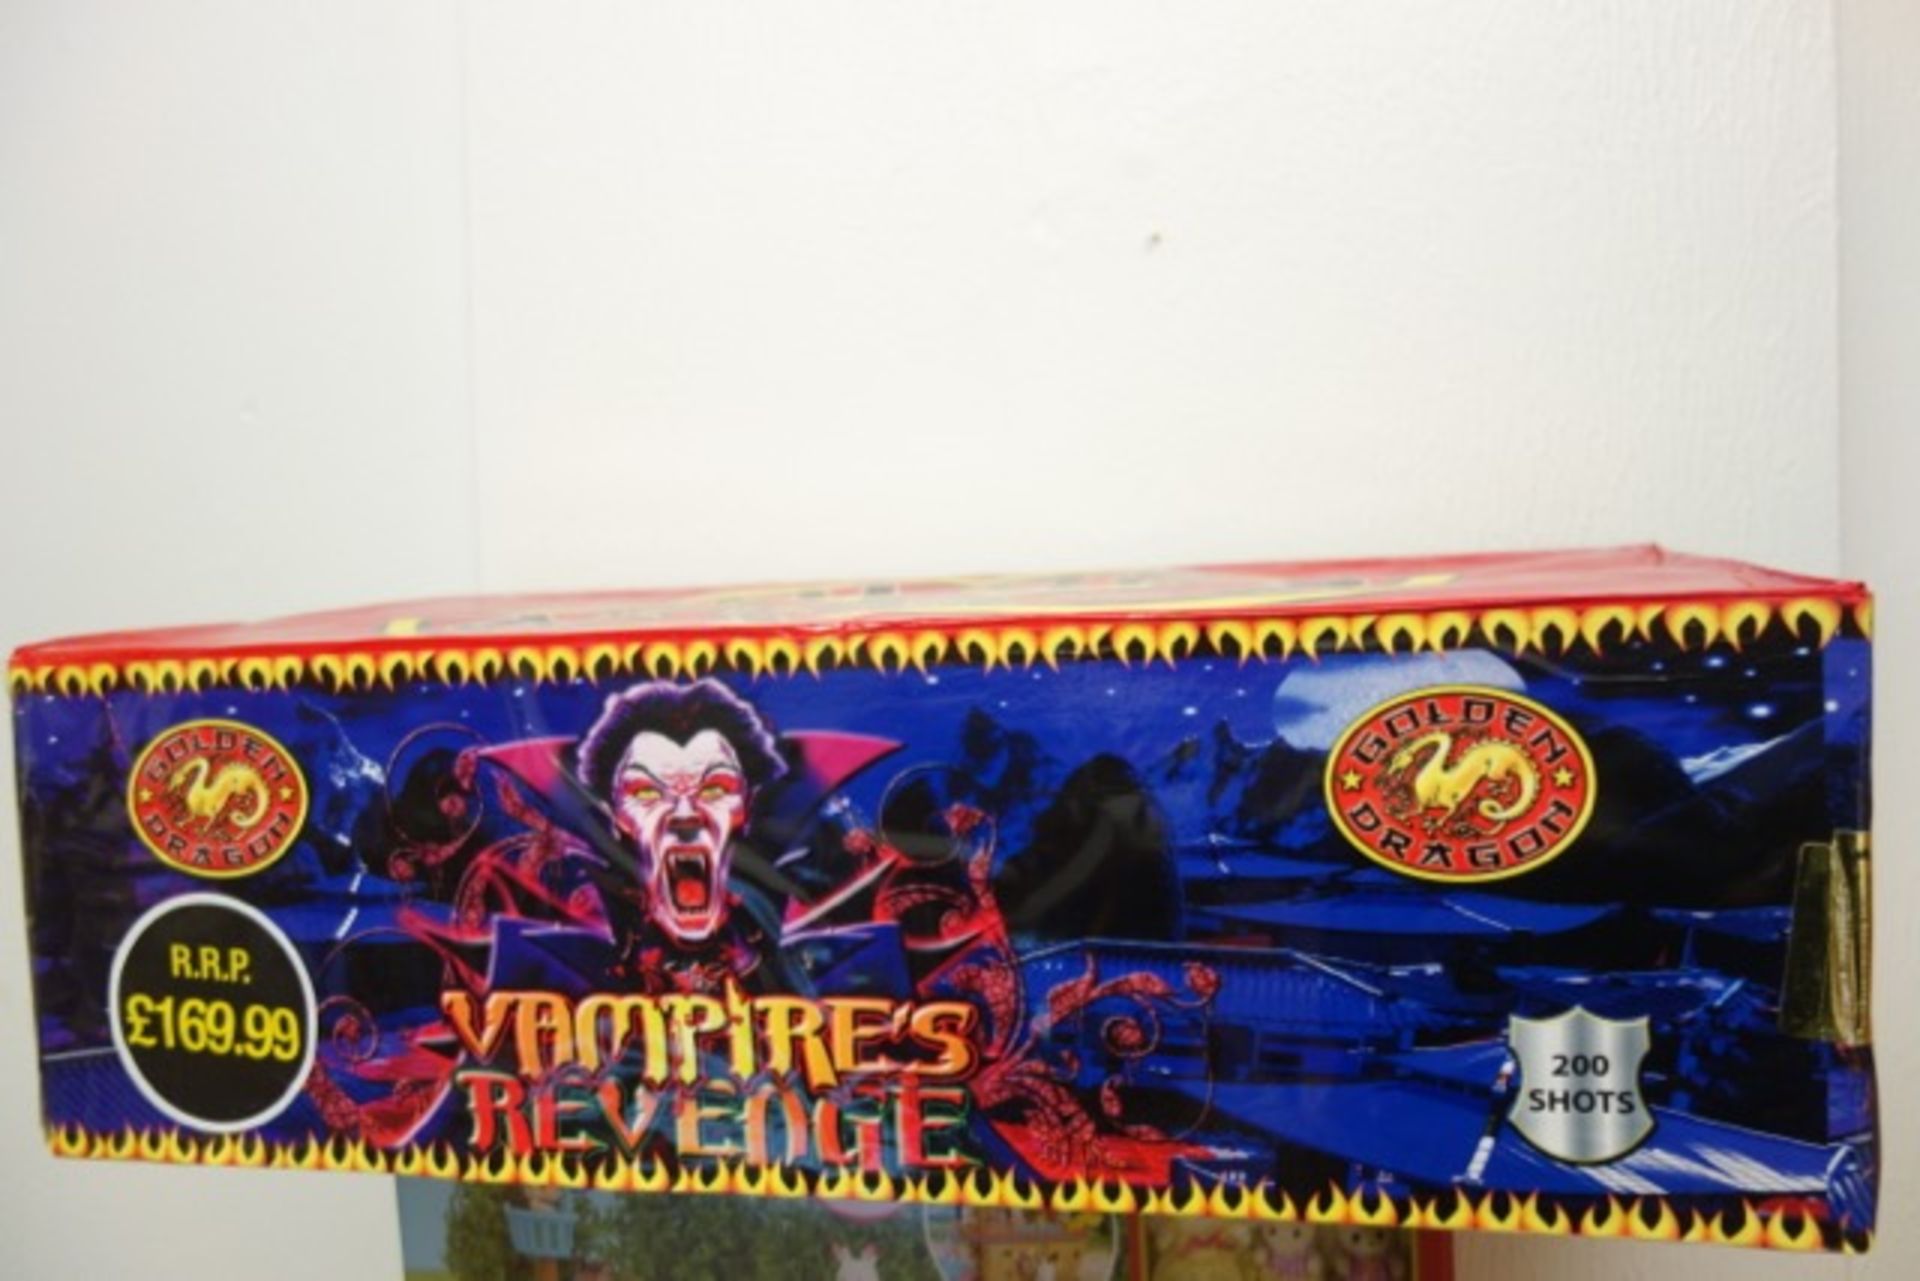 1 x Golden Dragon Fireworks - Vampires Revenge - 200 Shot Cake - Price Marked at £169.99. A 200 shot